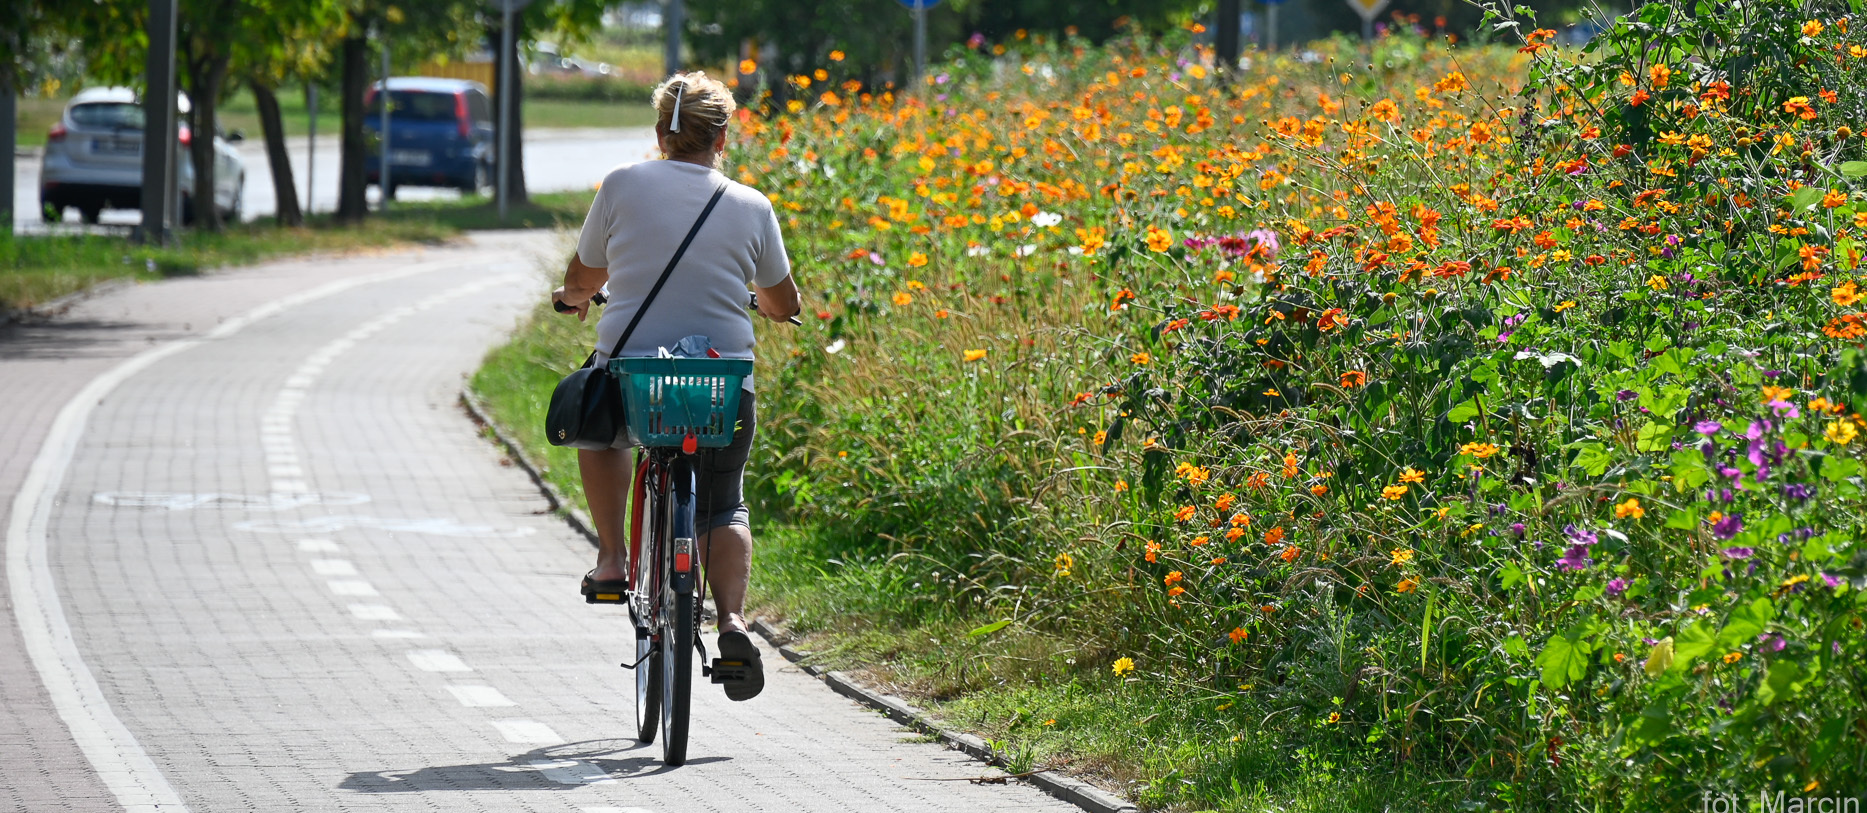 Kobieta jedzie rowerem po ścieżce rowerowej, obok znajduje się łąka kwietna